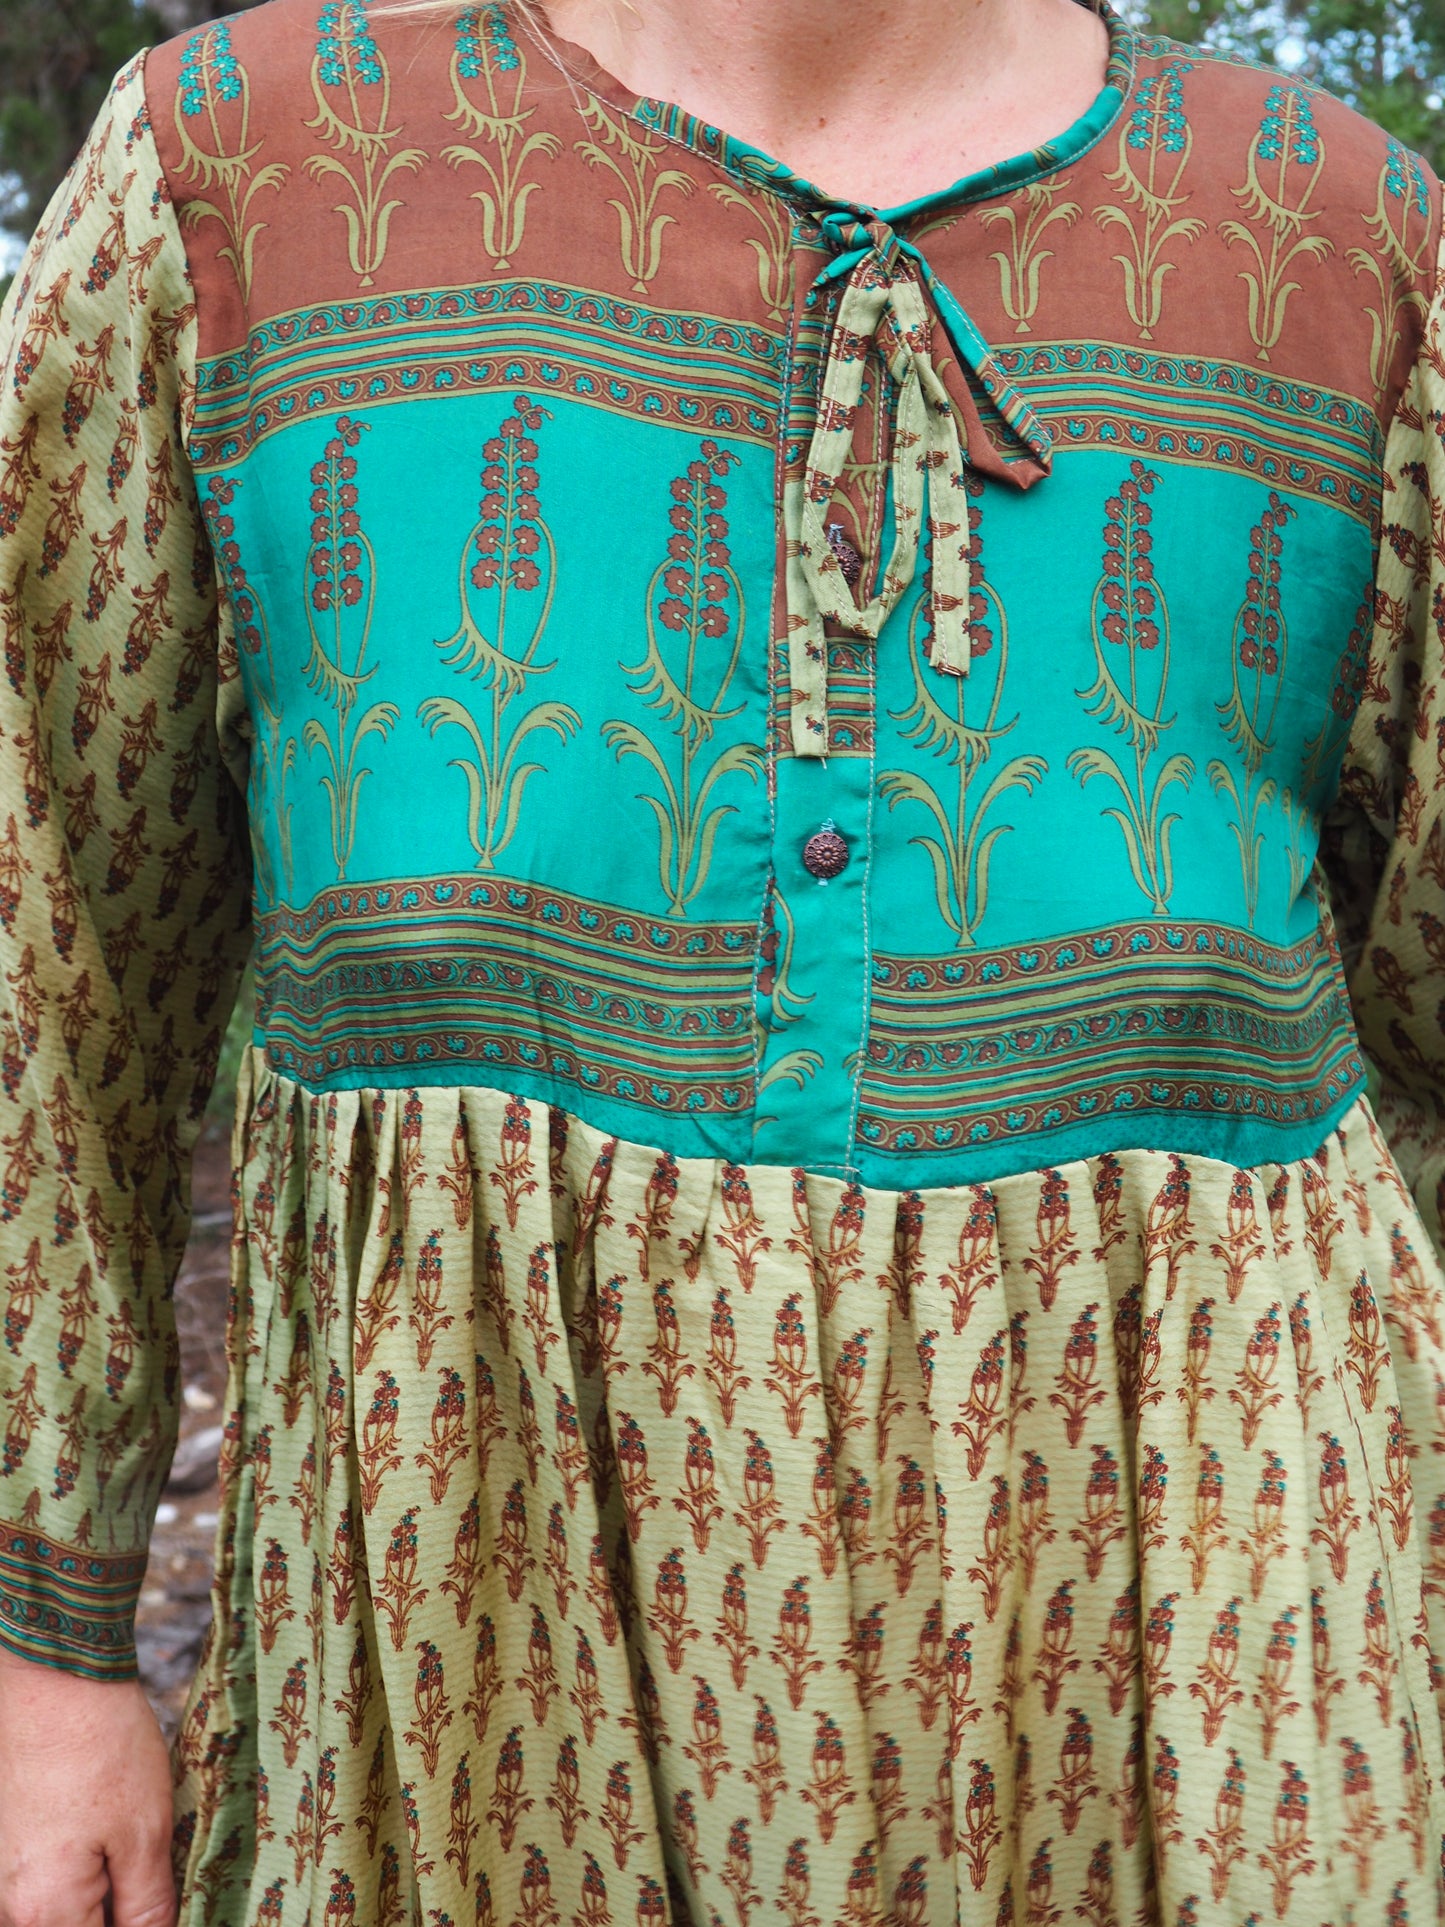 Vintage Indian sari dress up-cycled by Vagabond Ibiza